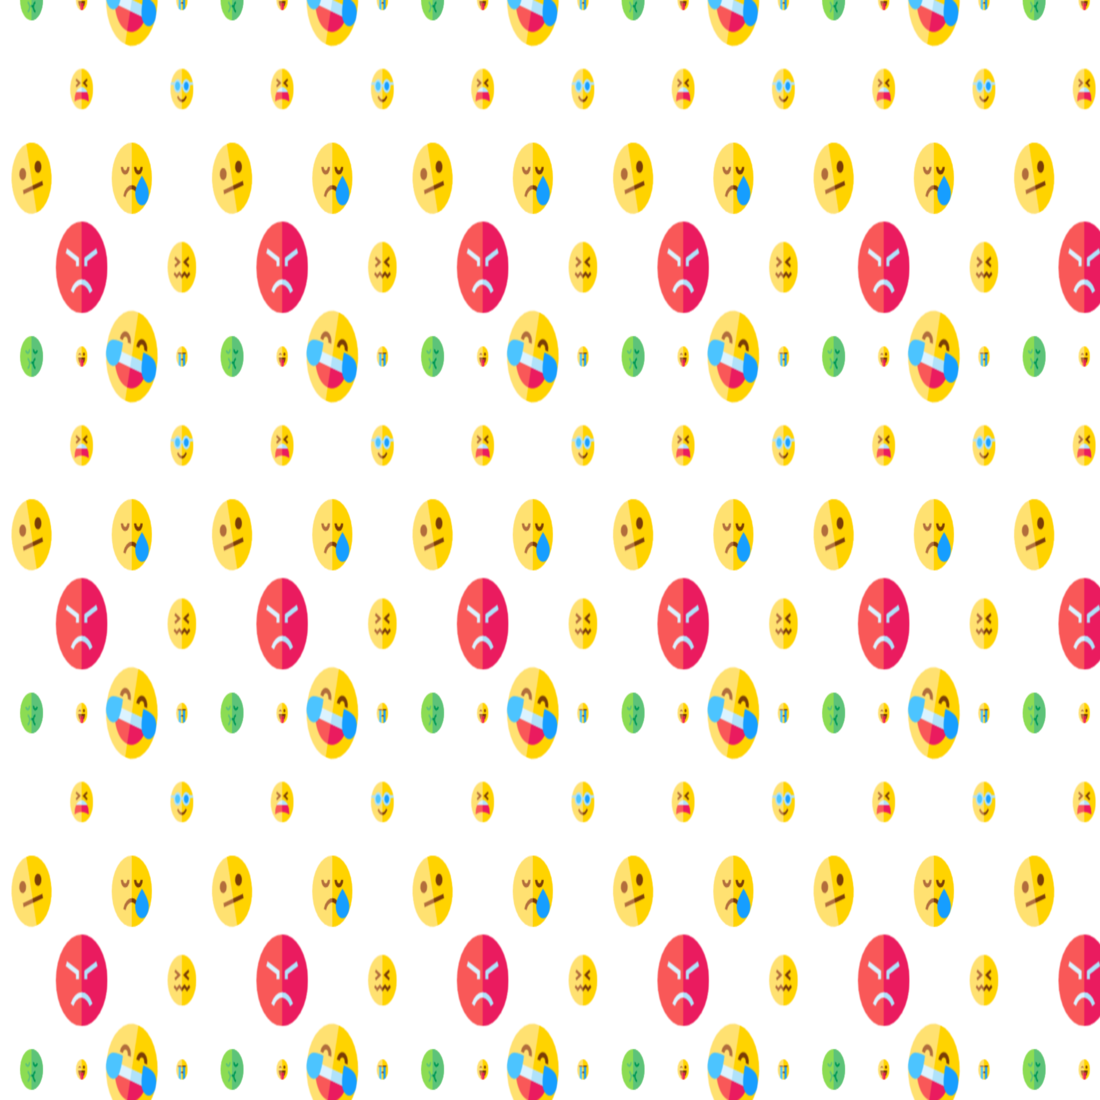 Amazing 8 Emoji Patterns facebook image.